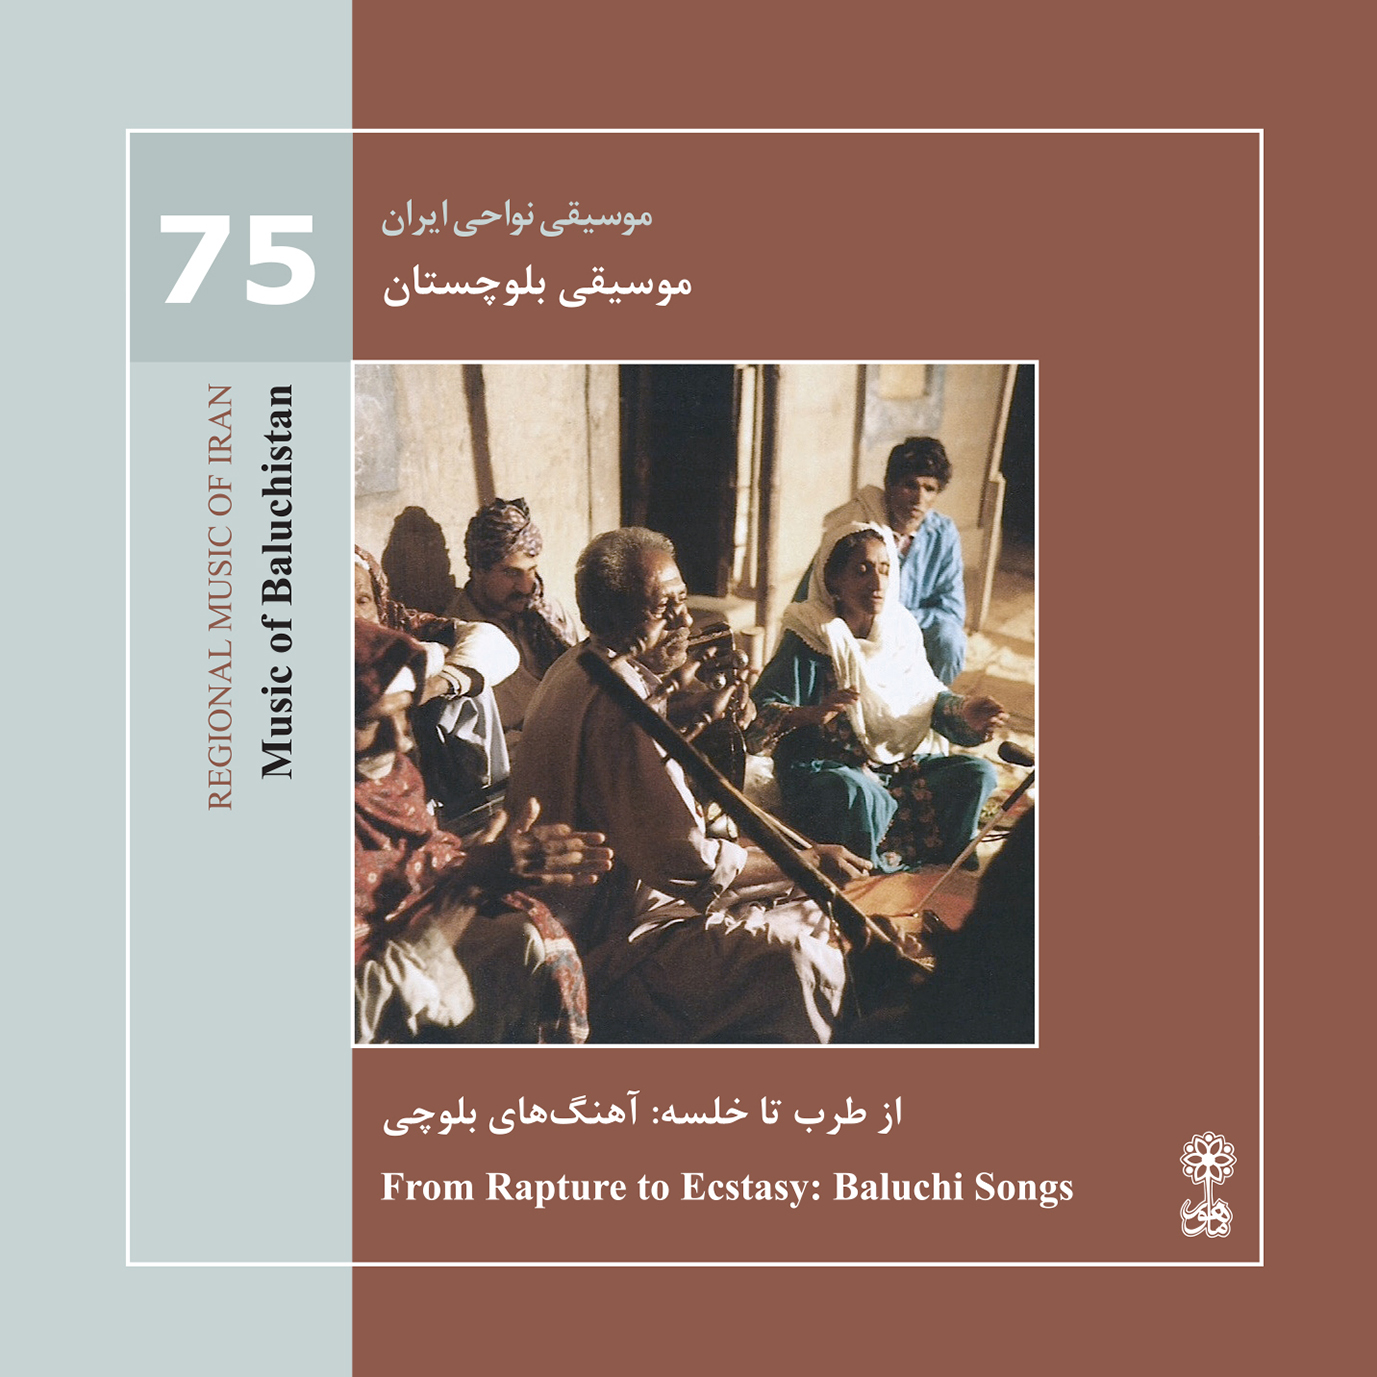 موسیقی بلوچستان (موسیقی نواحی ایران  ۷۵)